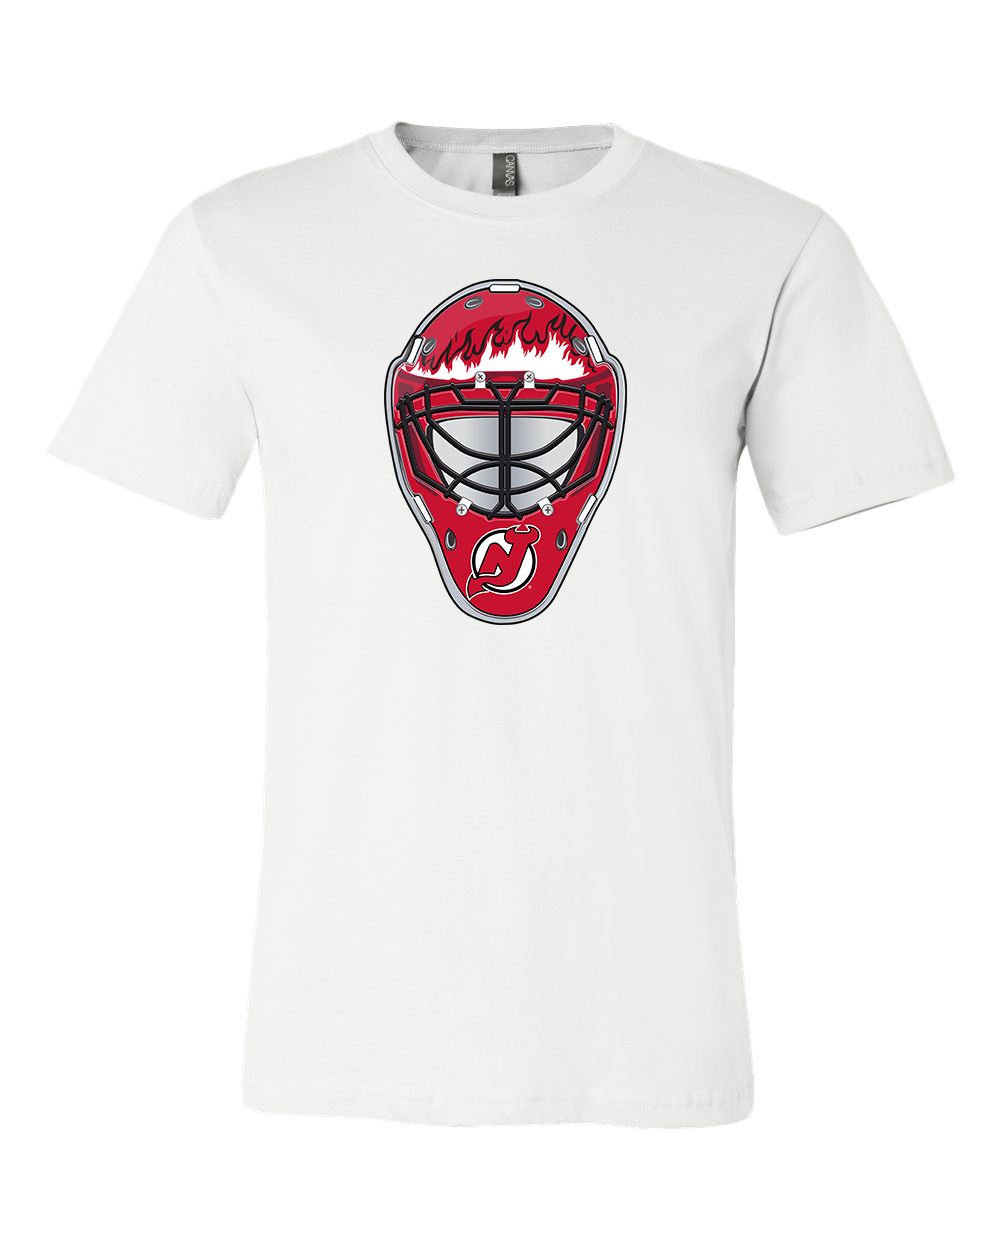 New Jersey Devils logo Team Shirt jersey shirt